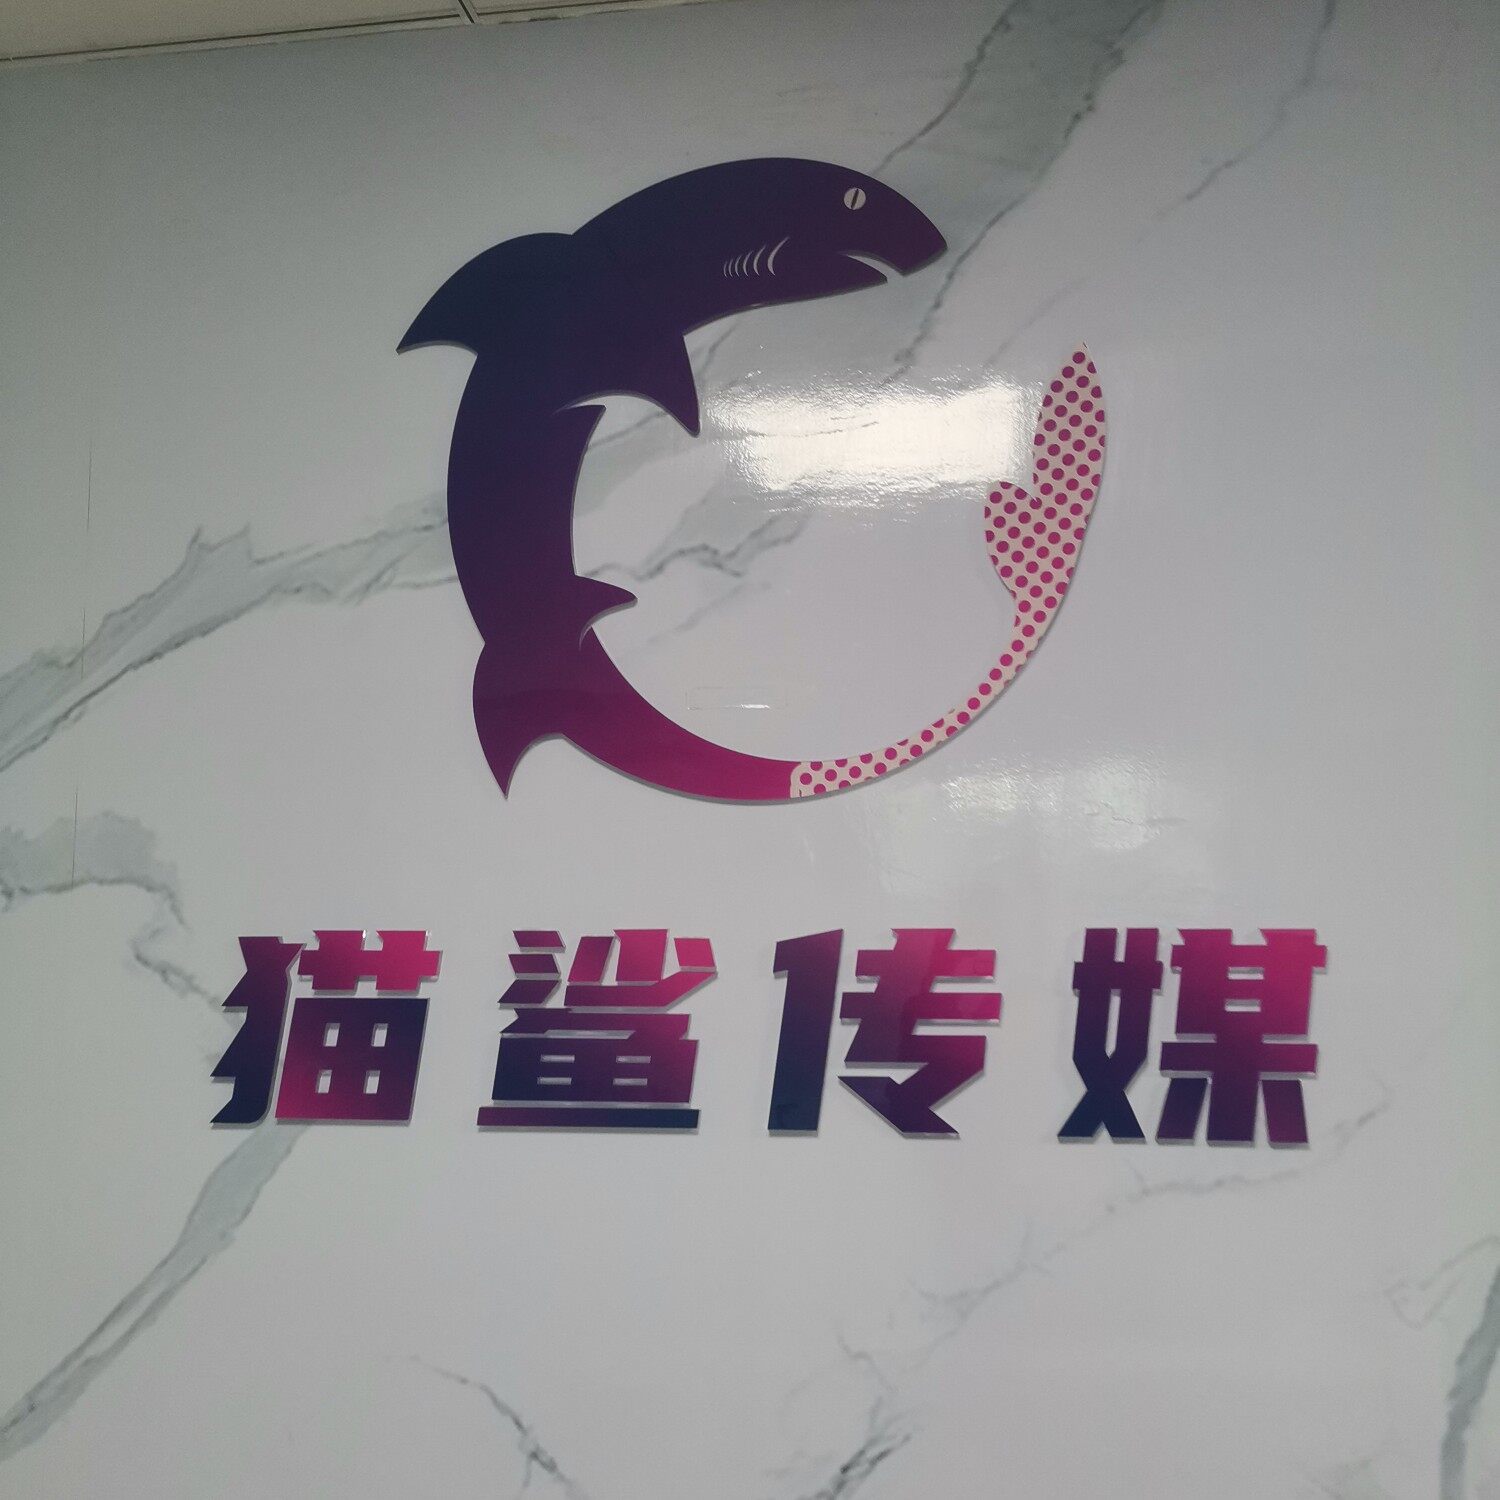 东莞市猫鲨文化传媒有限公司